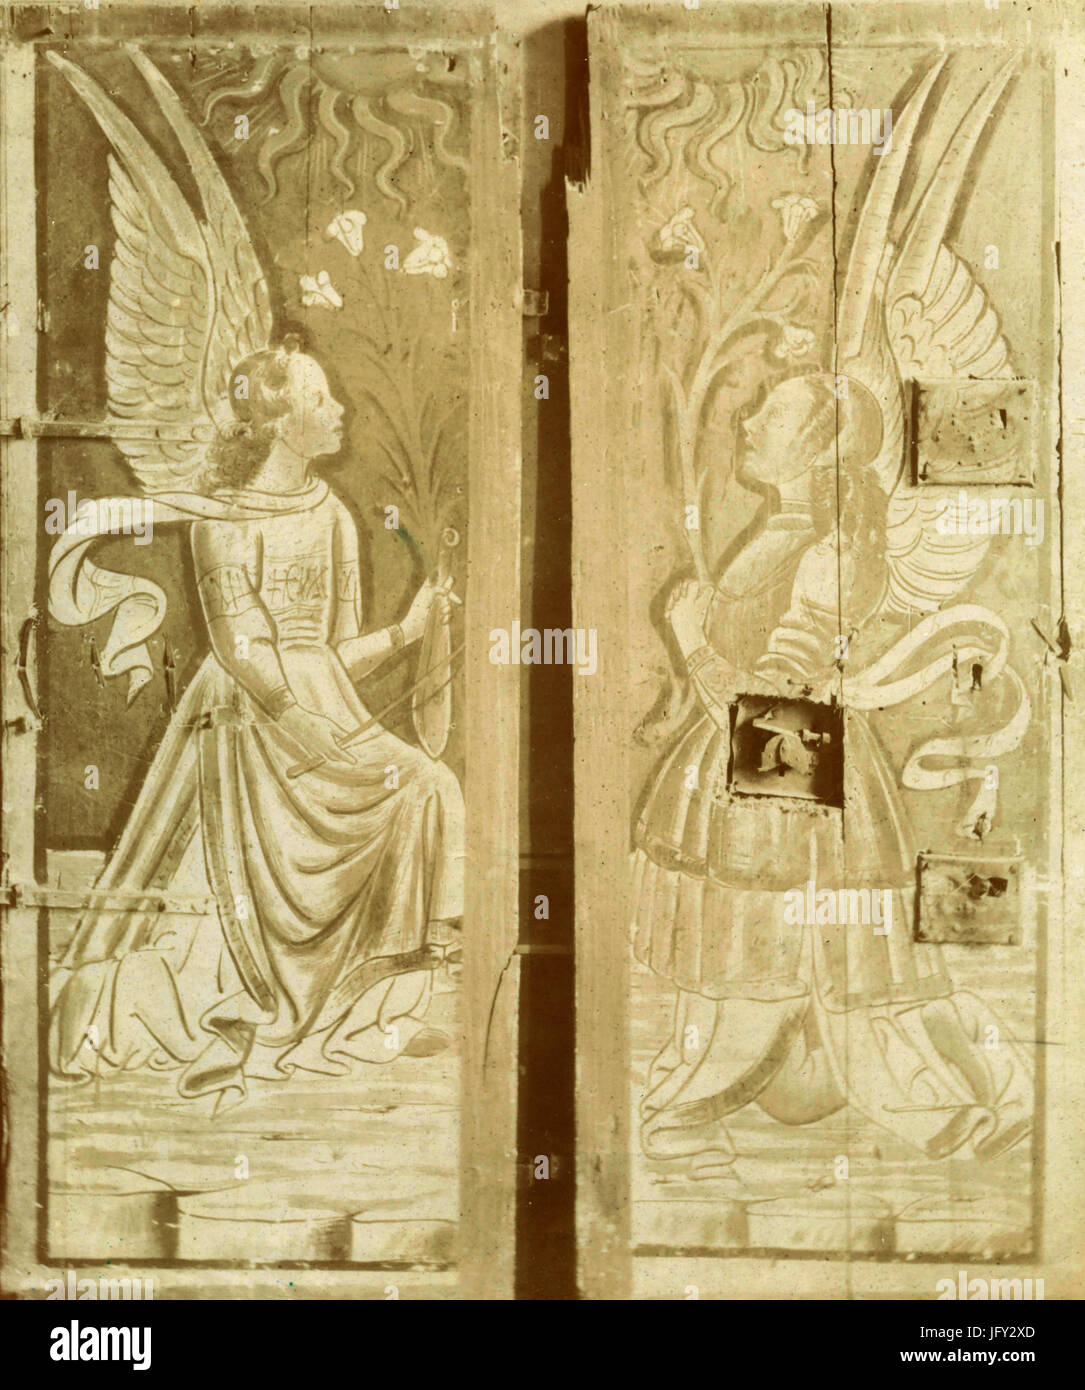 Anges, peinture sur bois par scuola Romagnola 1400, Imola, Italie Banque D'Images